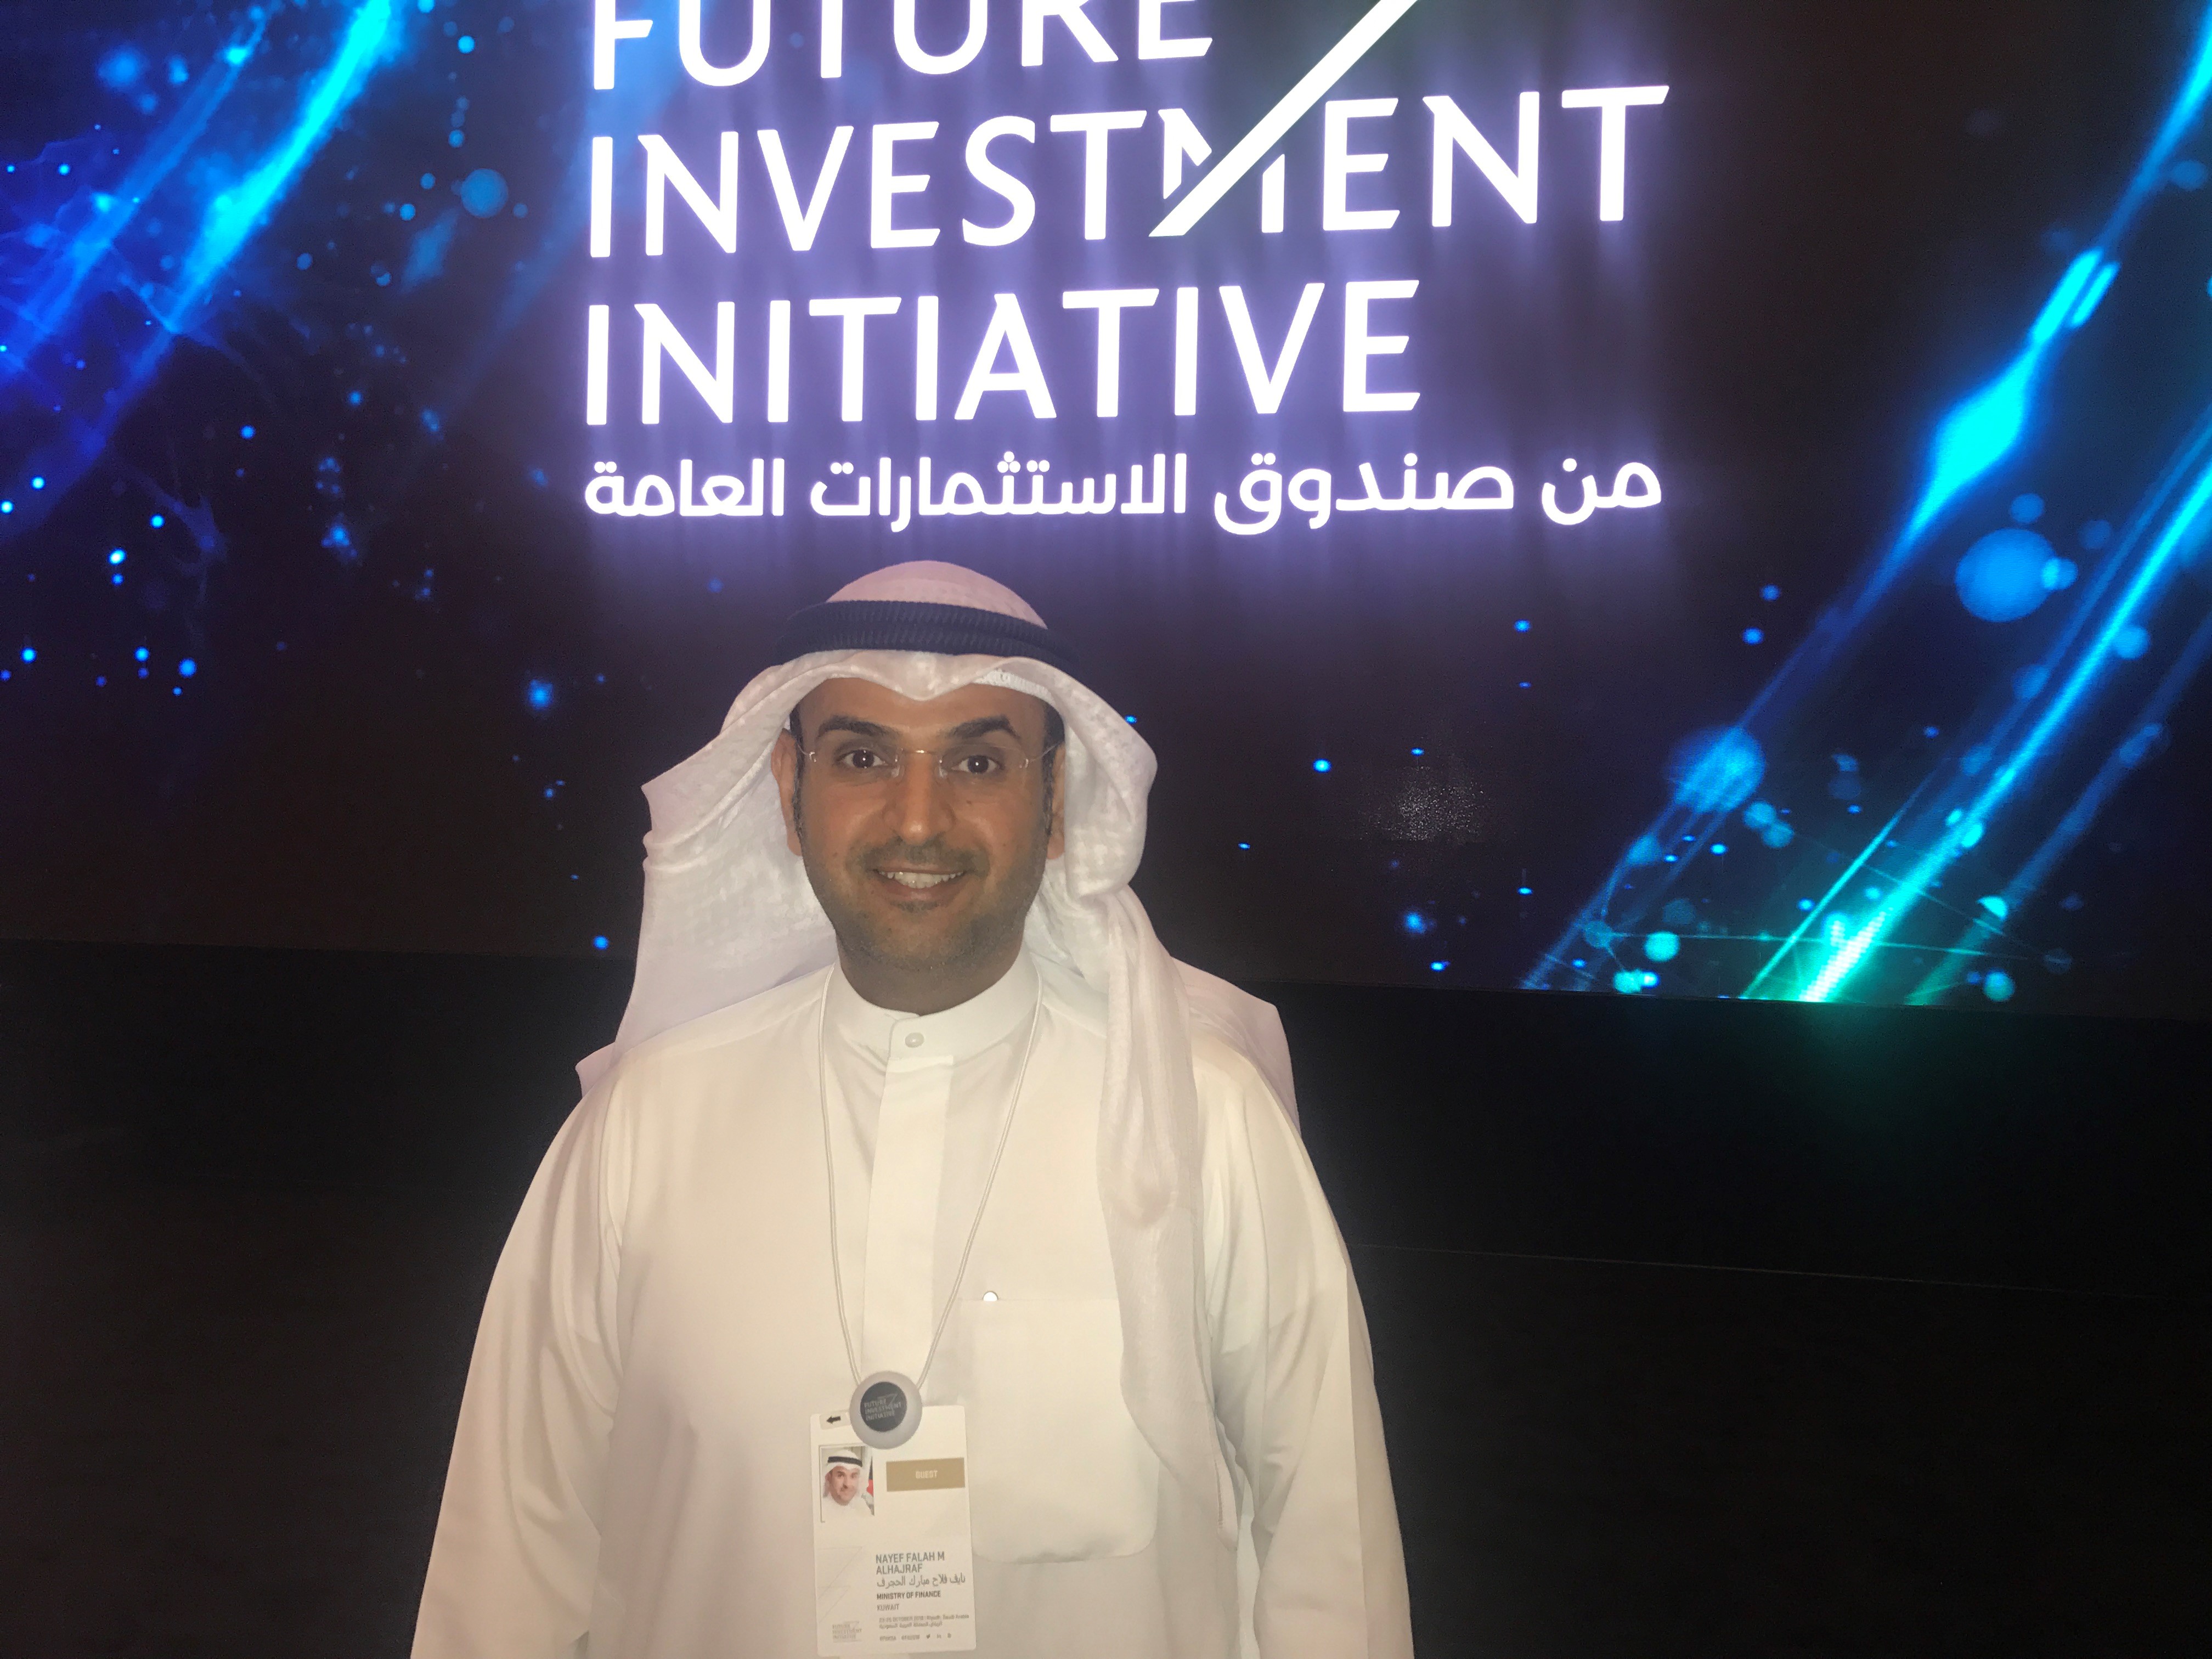 وزير المالية الكويتي الدكتور نايف الحجرف خلال مشاركته في مؤتمر (مبادرة المستقبل للاستثمار) بالرياض